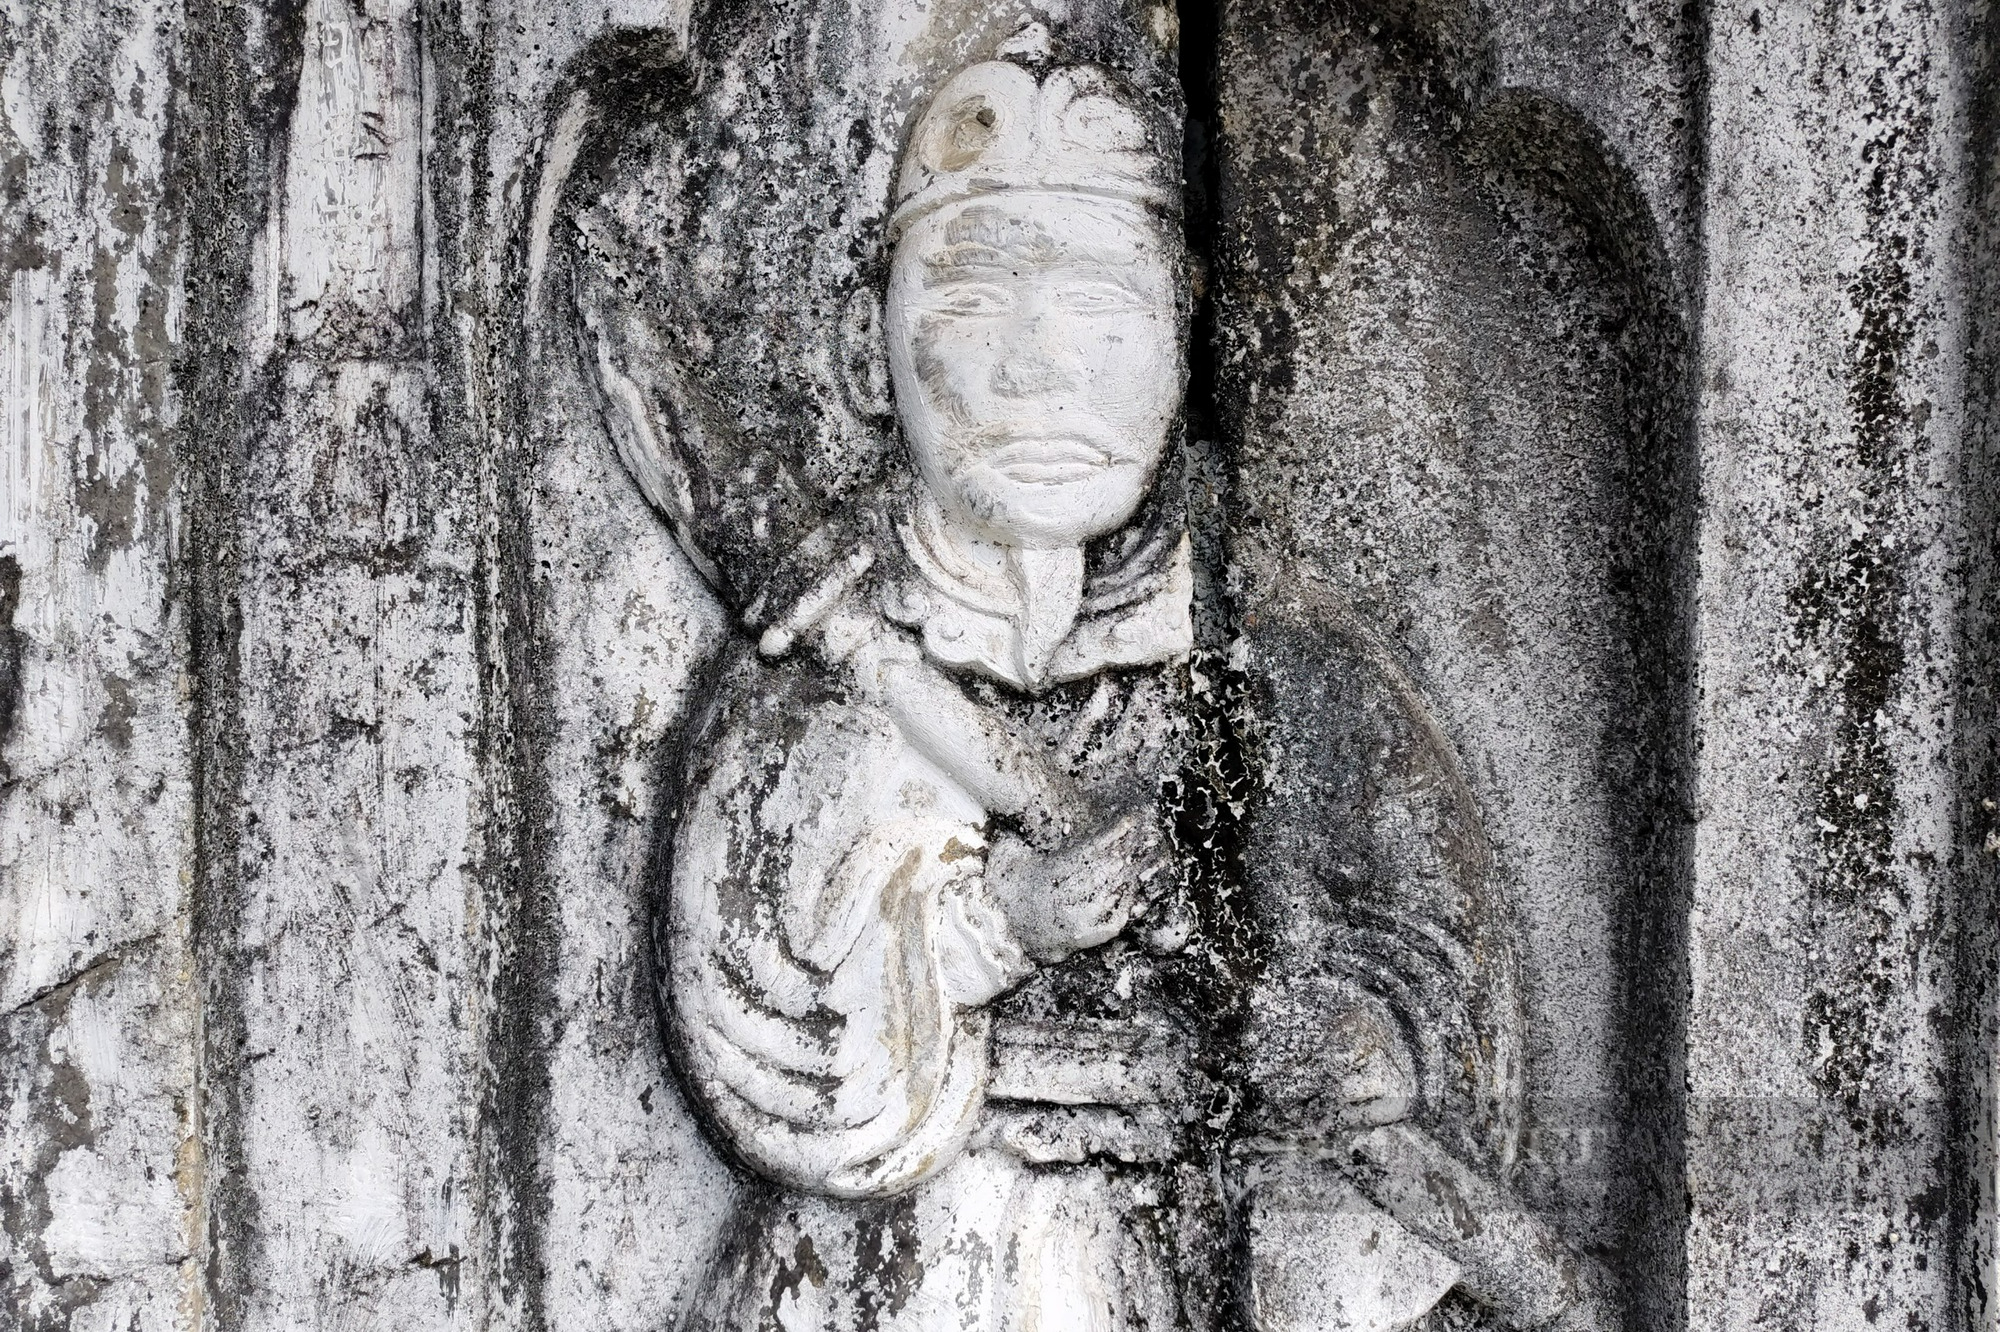 Bí ẩn phía sau lăng mộ đá thời Lê Trịnh ít người biết đến ở Hà Nội - Ảnh 8.